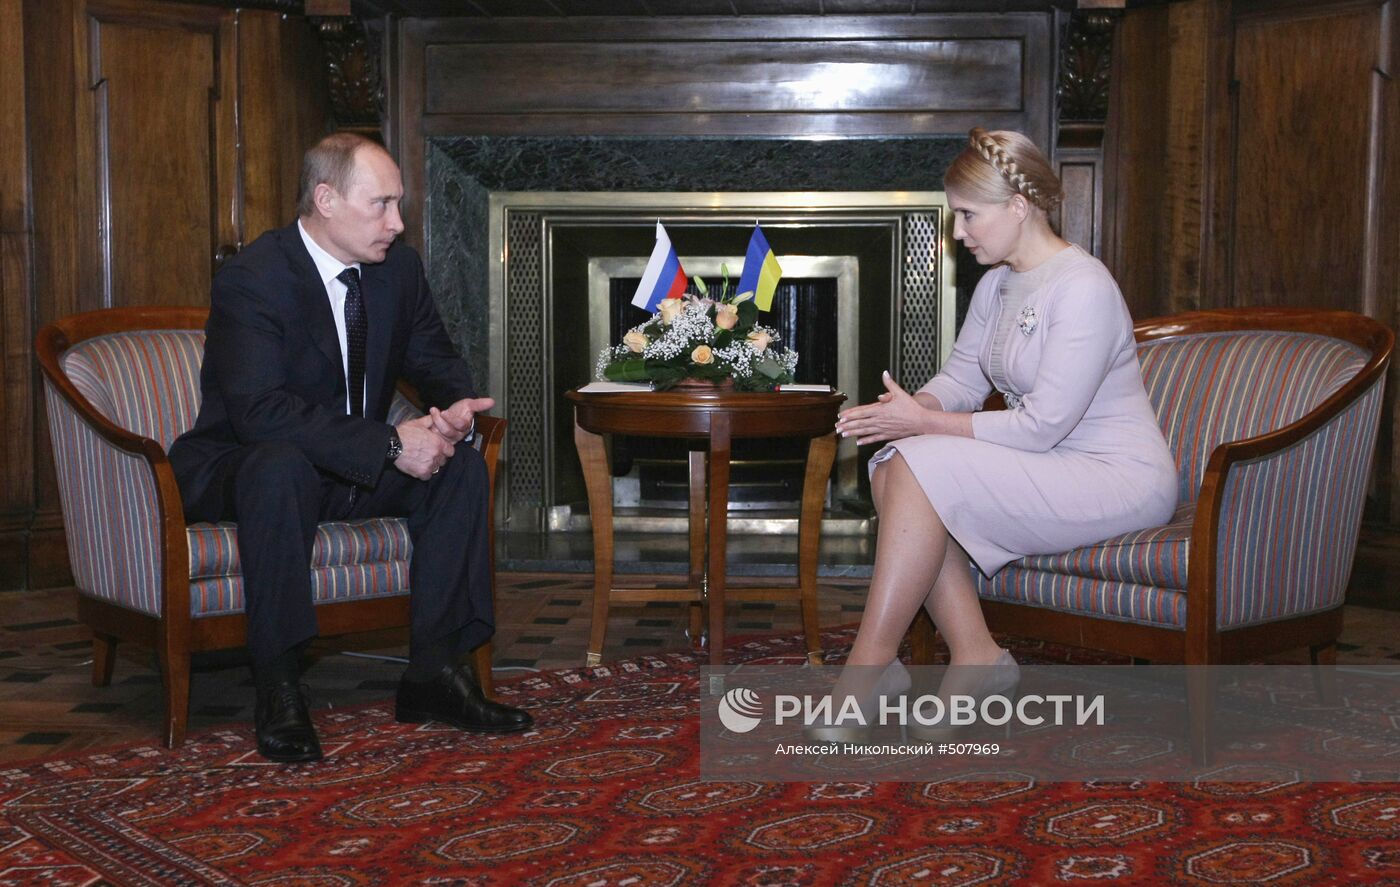 Рабочий визит премьер-министра РФ В.Путина на Украину